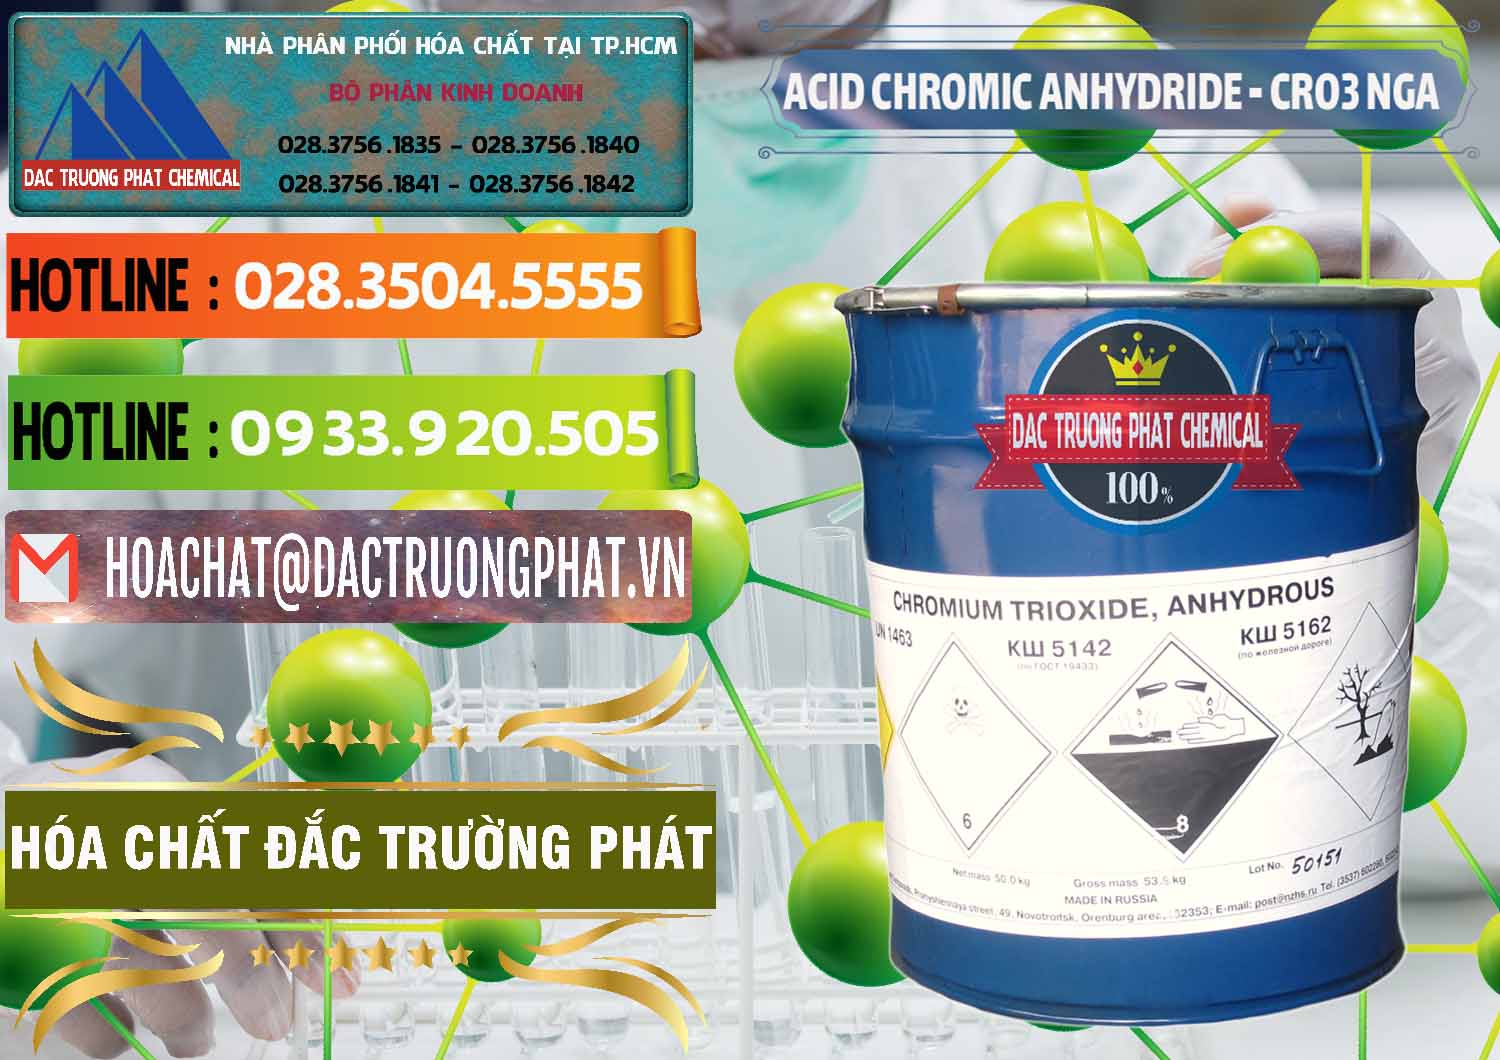 Cty chuyên kinh doanh và bán Acid Chromic Anhydride - Cromic CRO3 Nga Russia - 0006 - Công ty chuyên cung cấp _ kinh doanh hóa chất tại TP.HCM - cungcaphoachat.com.vn